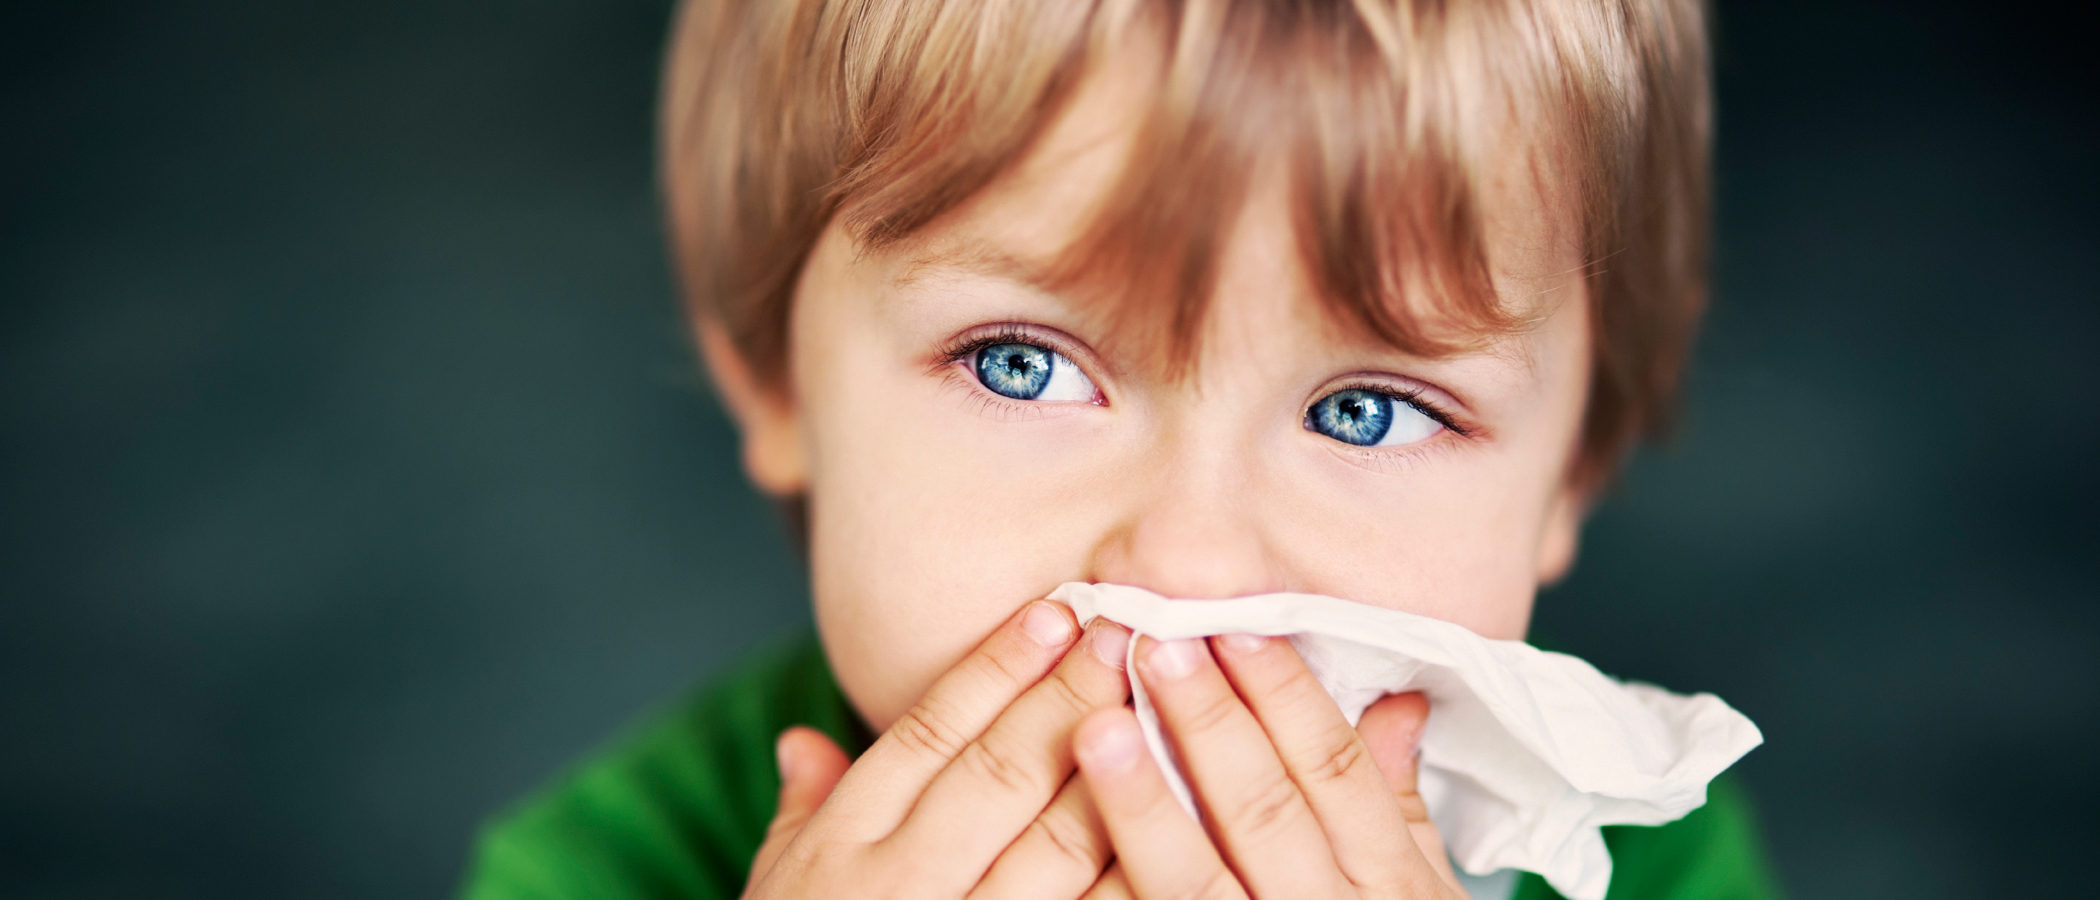 El resfriado en niños pequeños, ¿hay medicamentos para curarlo?